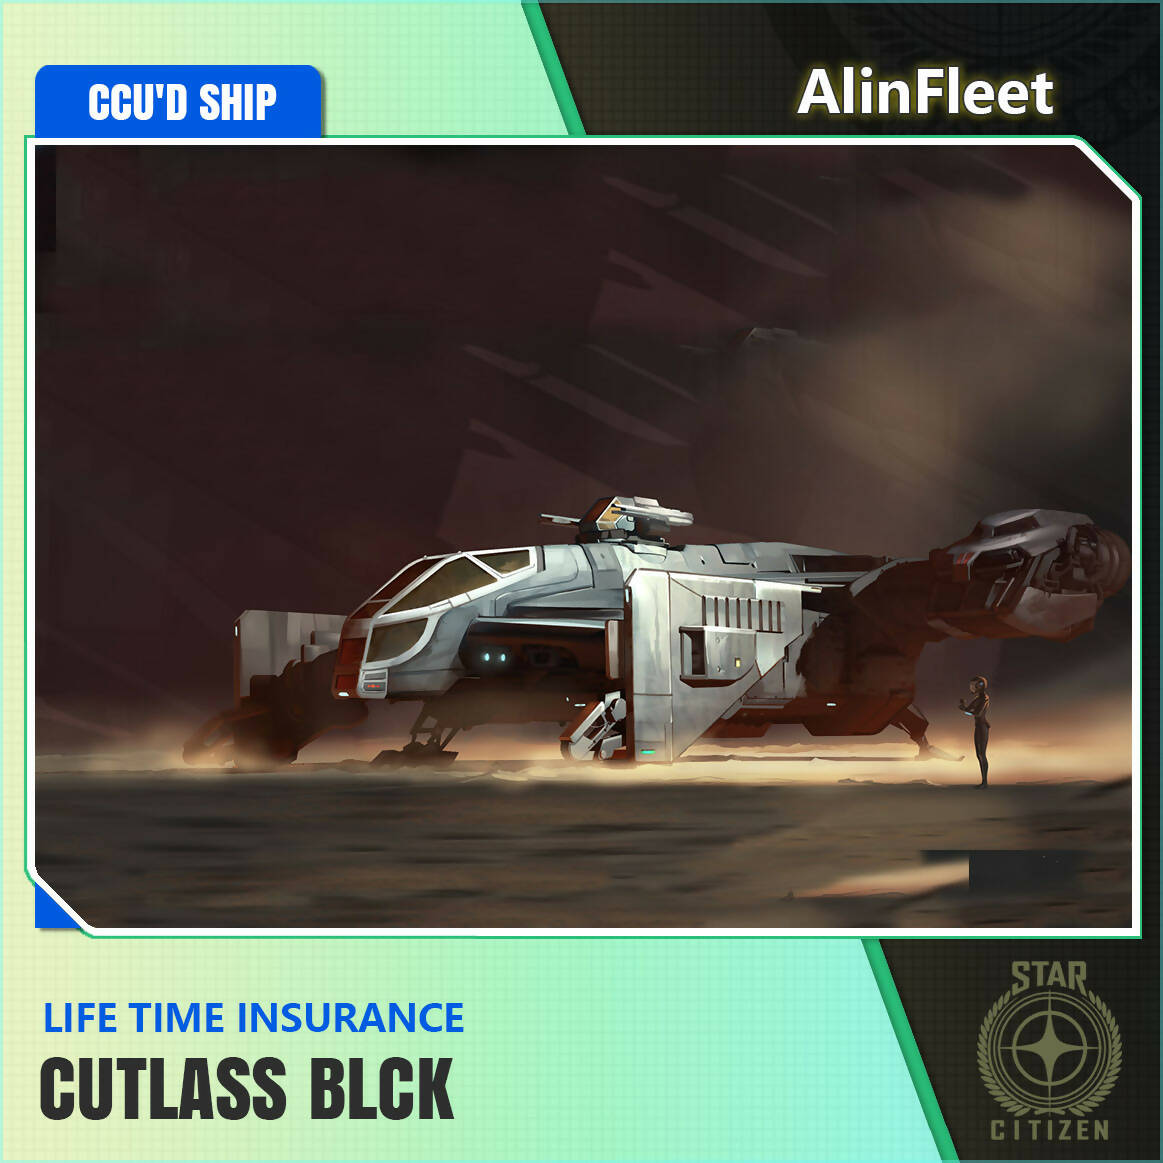 Cutlass Black - LTI Insurance - CCU'd Ship